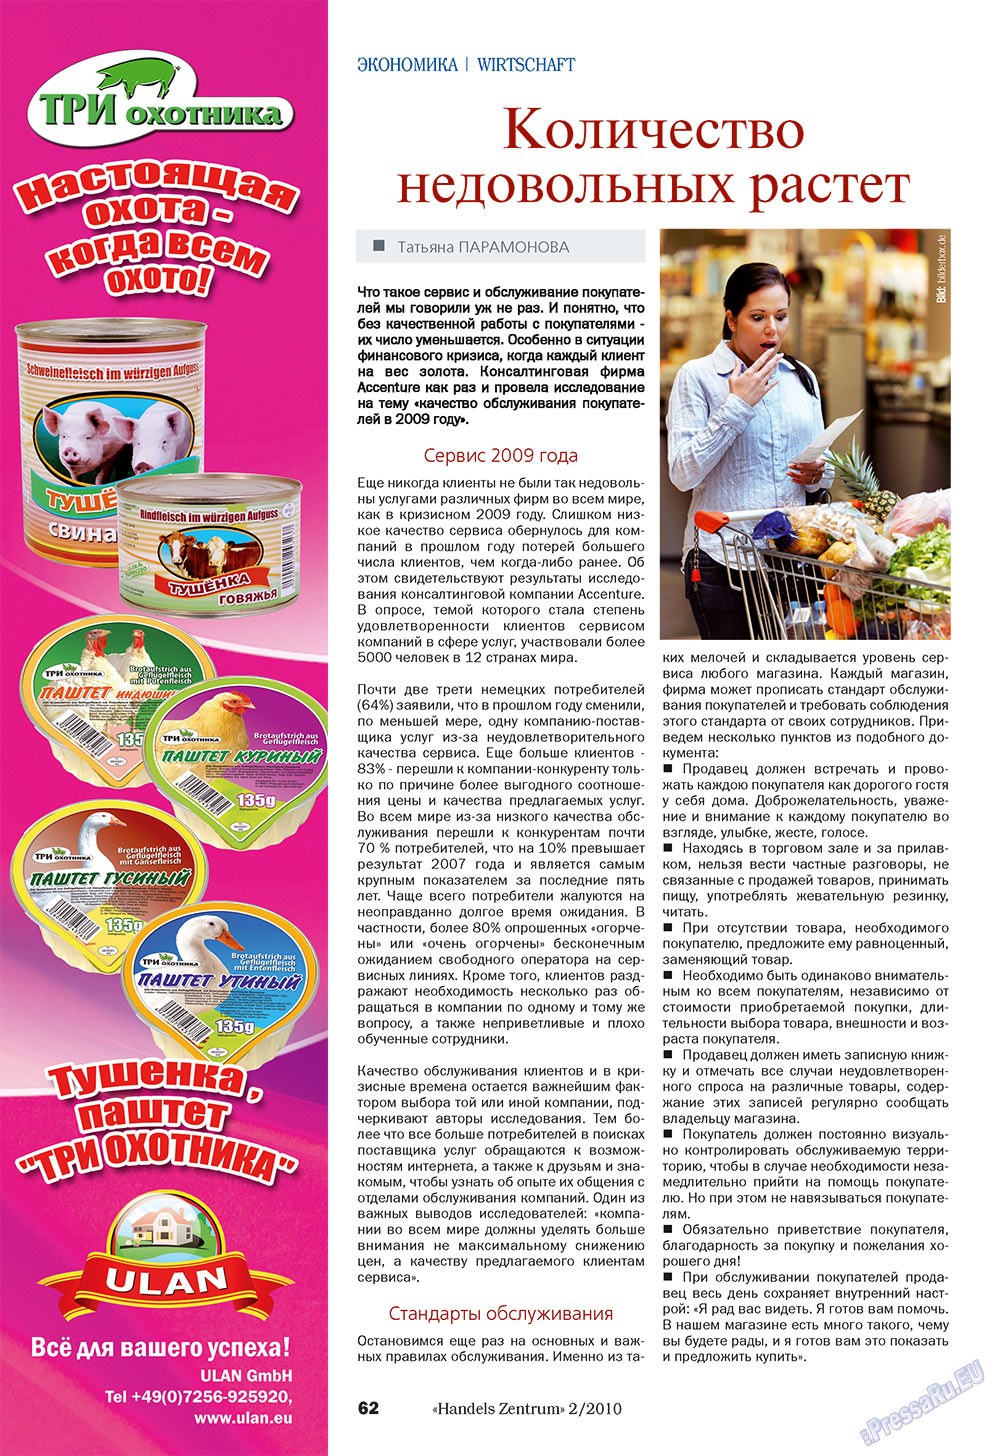 Handels Zentrum (Zeitschrift). 2010 Jahr, Ausgabe 2, Seite 62